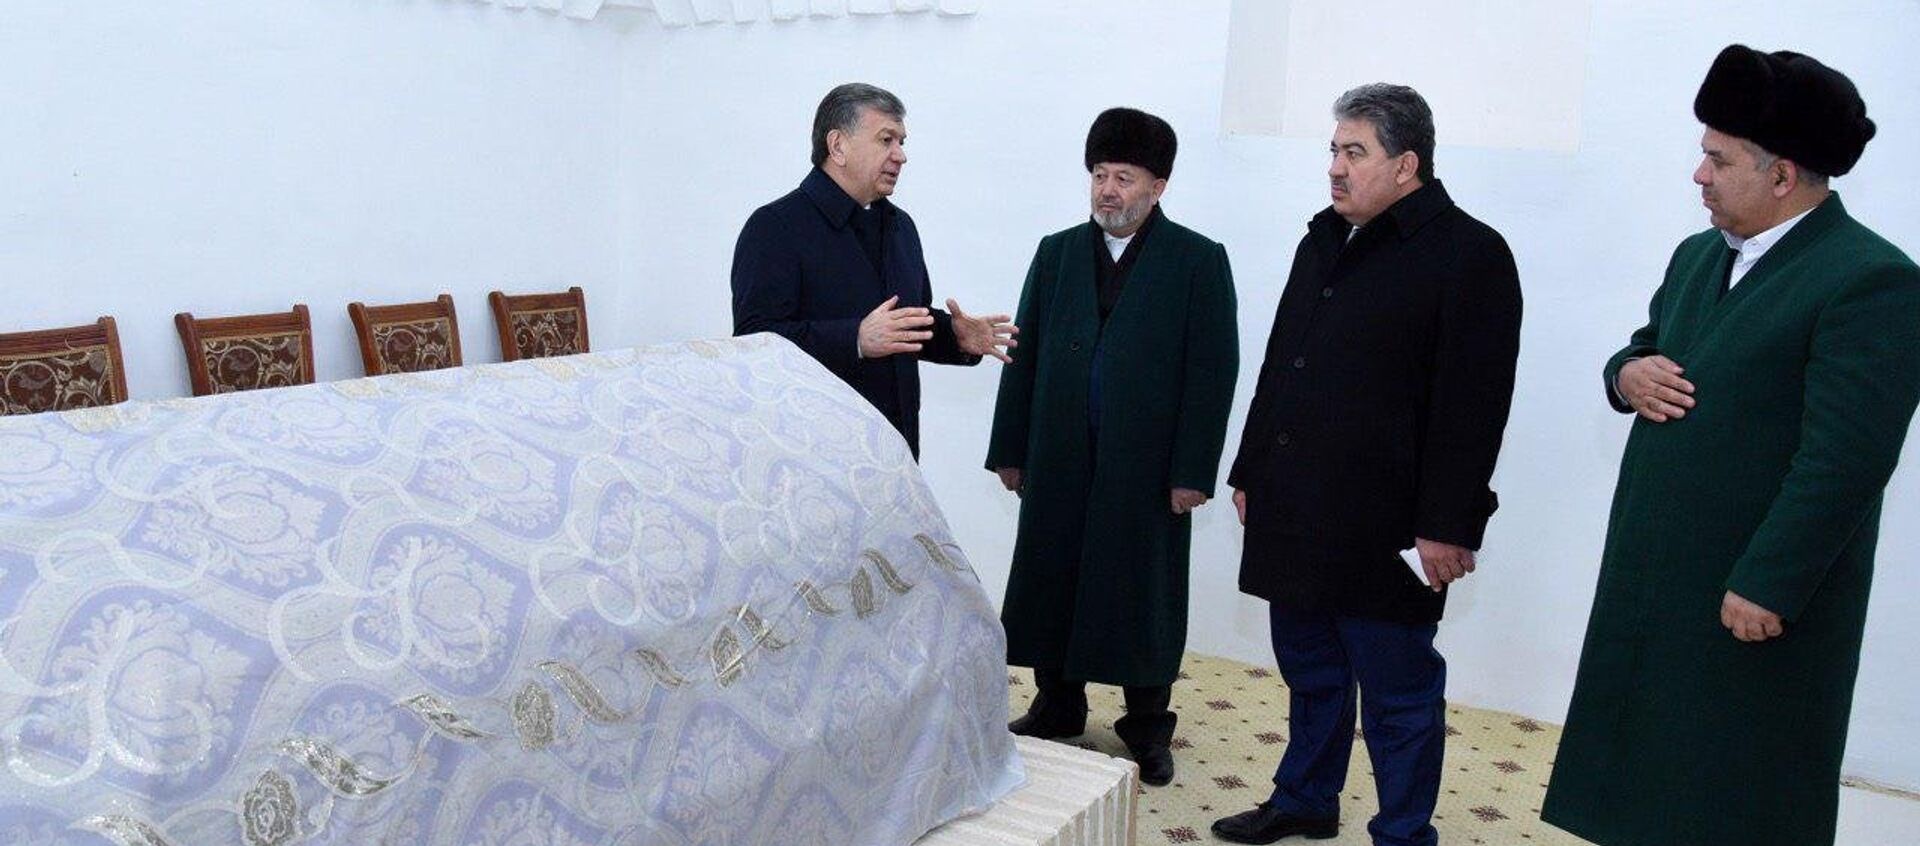 Шавкат Мирзиёев посетил мавзолей Абу Муина Насафи, осмотрел проделанную здесь работу по строительству и благоустройству - Sputnik Узбекистан, 1920, 29.01.2018